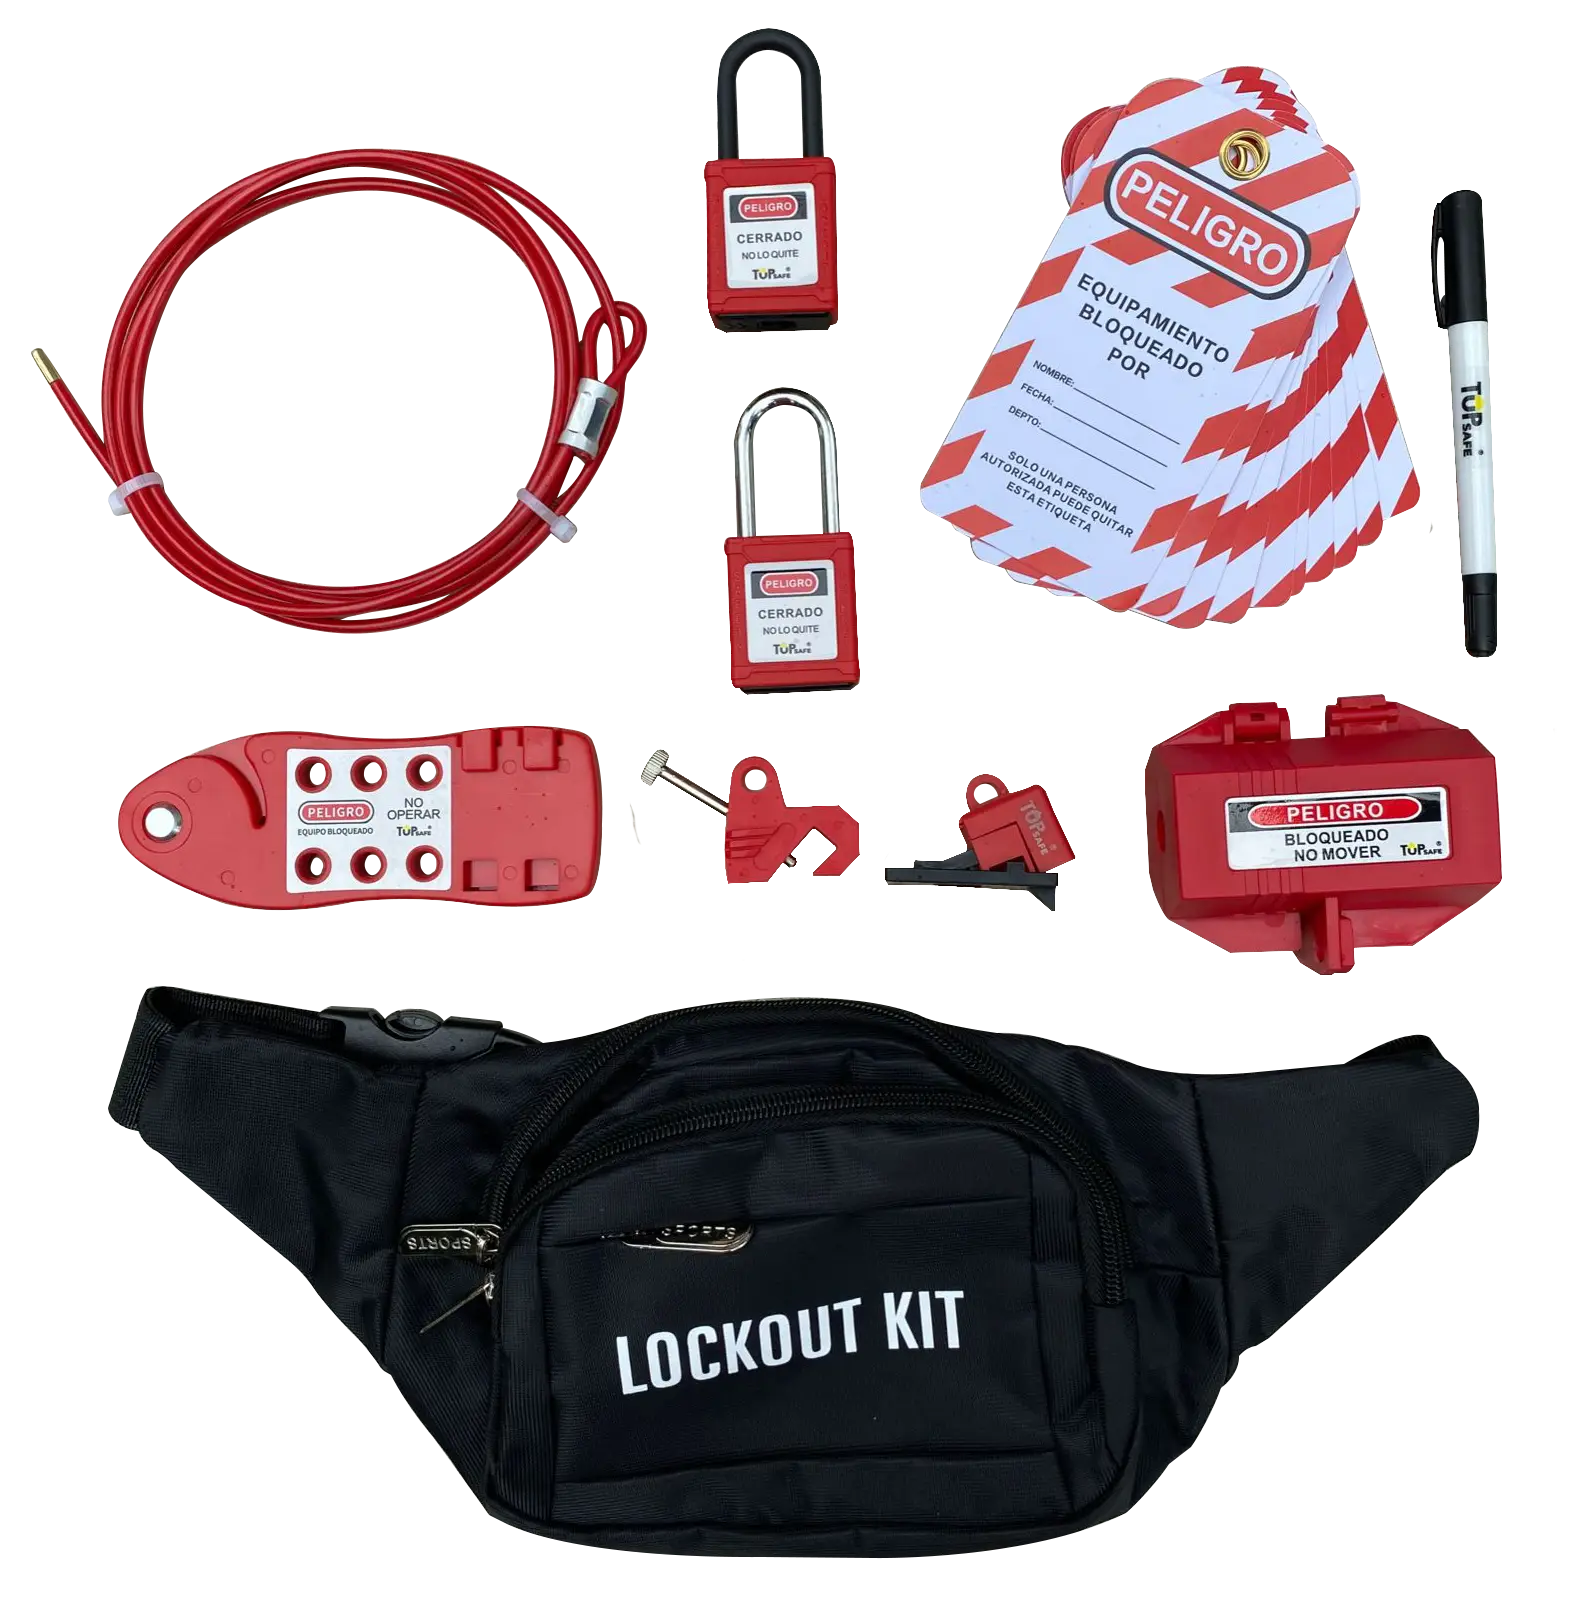 Kit Electricista Boyuan de Bloqueo y Etiquetado Lockout Tagout